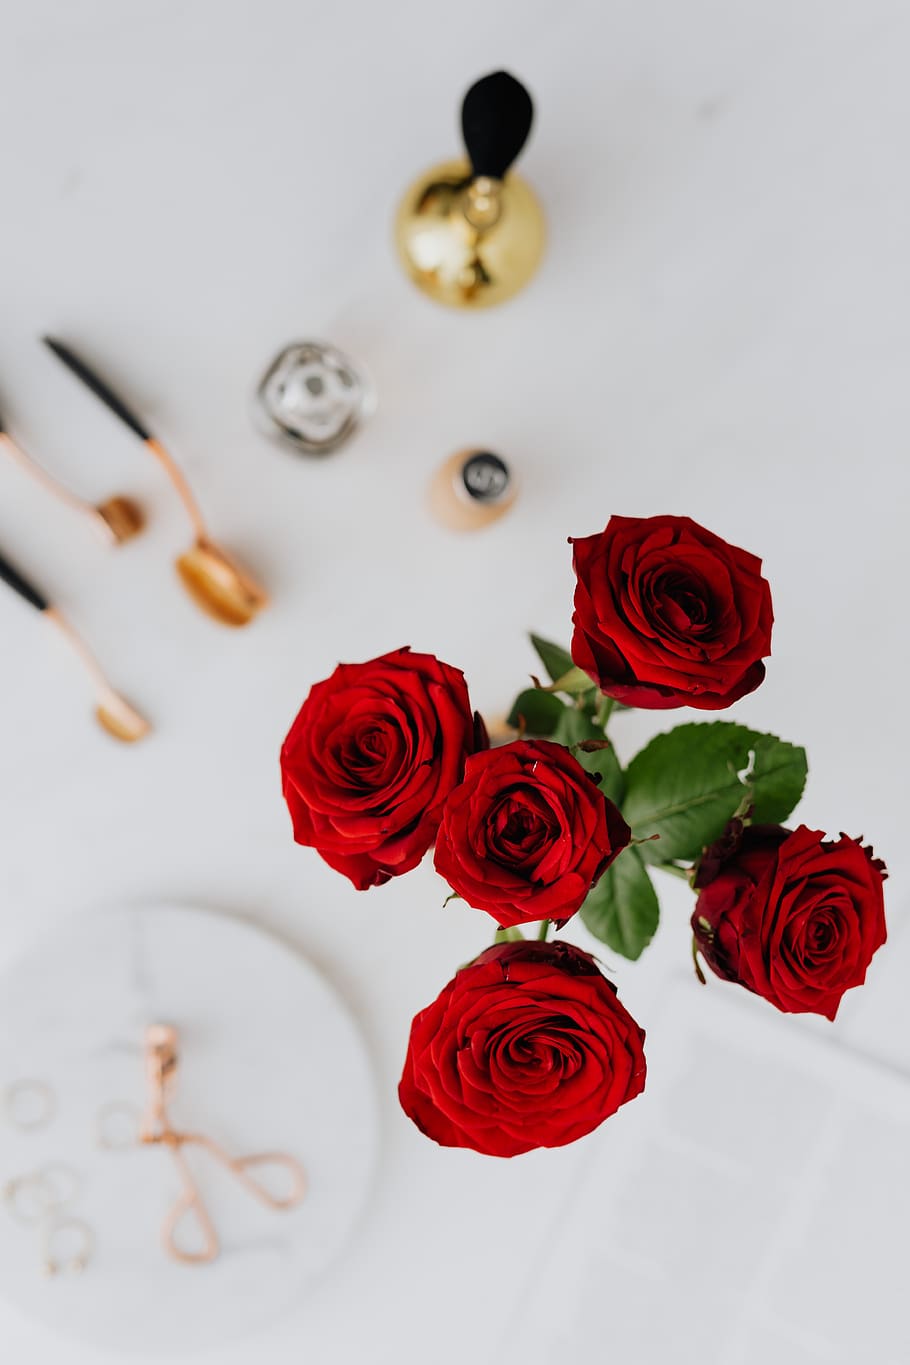 mawar, perhiasan, keindahan, accesories, mawar mawar merah, emas, keemasan, penting, marmer, marmer putih